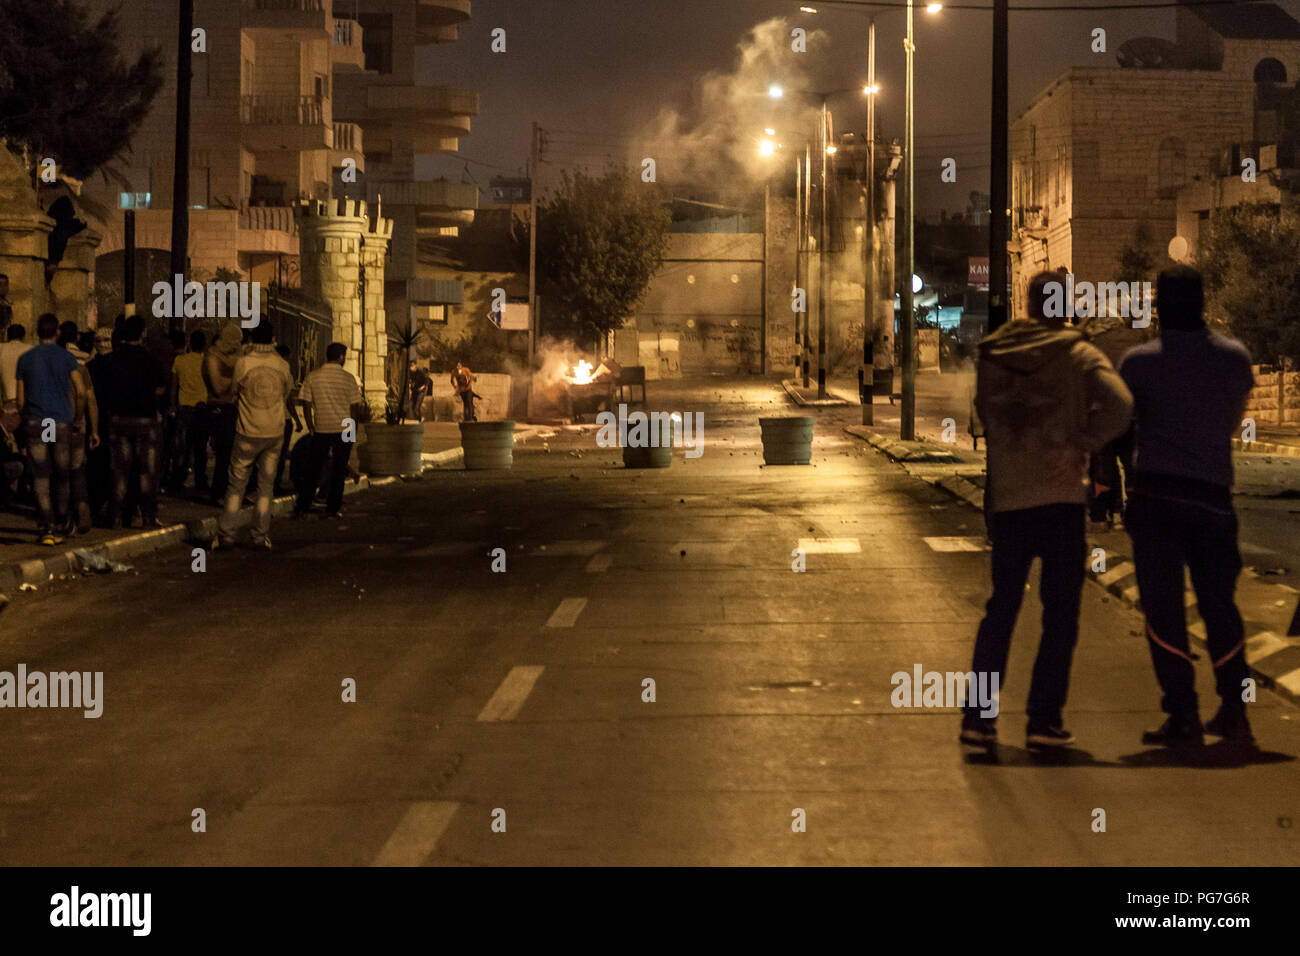 Belén, Palestina, 23 de julio de 2014: Los palestinos que viven en la calle delante del muro de separación en Belén durante la noche disturbios dirigidos contra Israel. Foto de stock